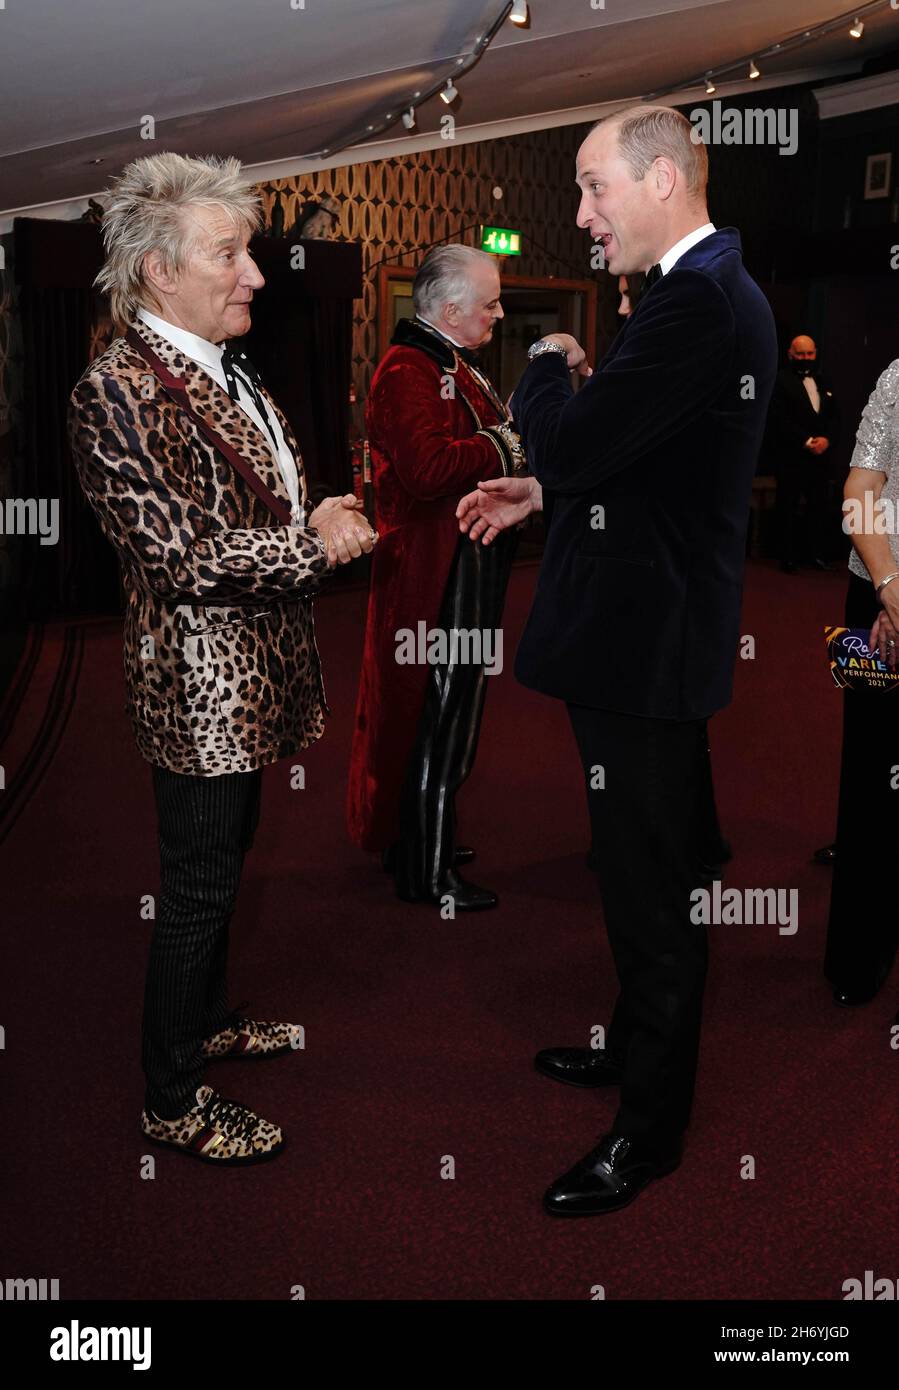 Le duc de Cambridge (à droite) parlant à Rod Stewart après la Royal Variety Performance au Royal Albert Hall, Londres.Date de la photo: Jeudi 18 novembre 2021. Banque D'Images